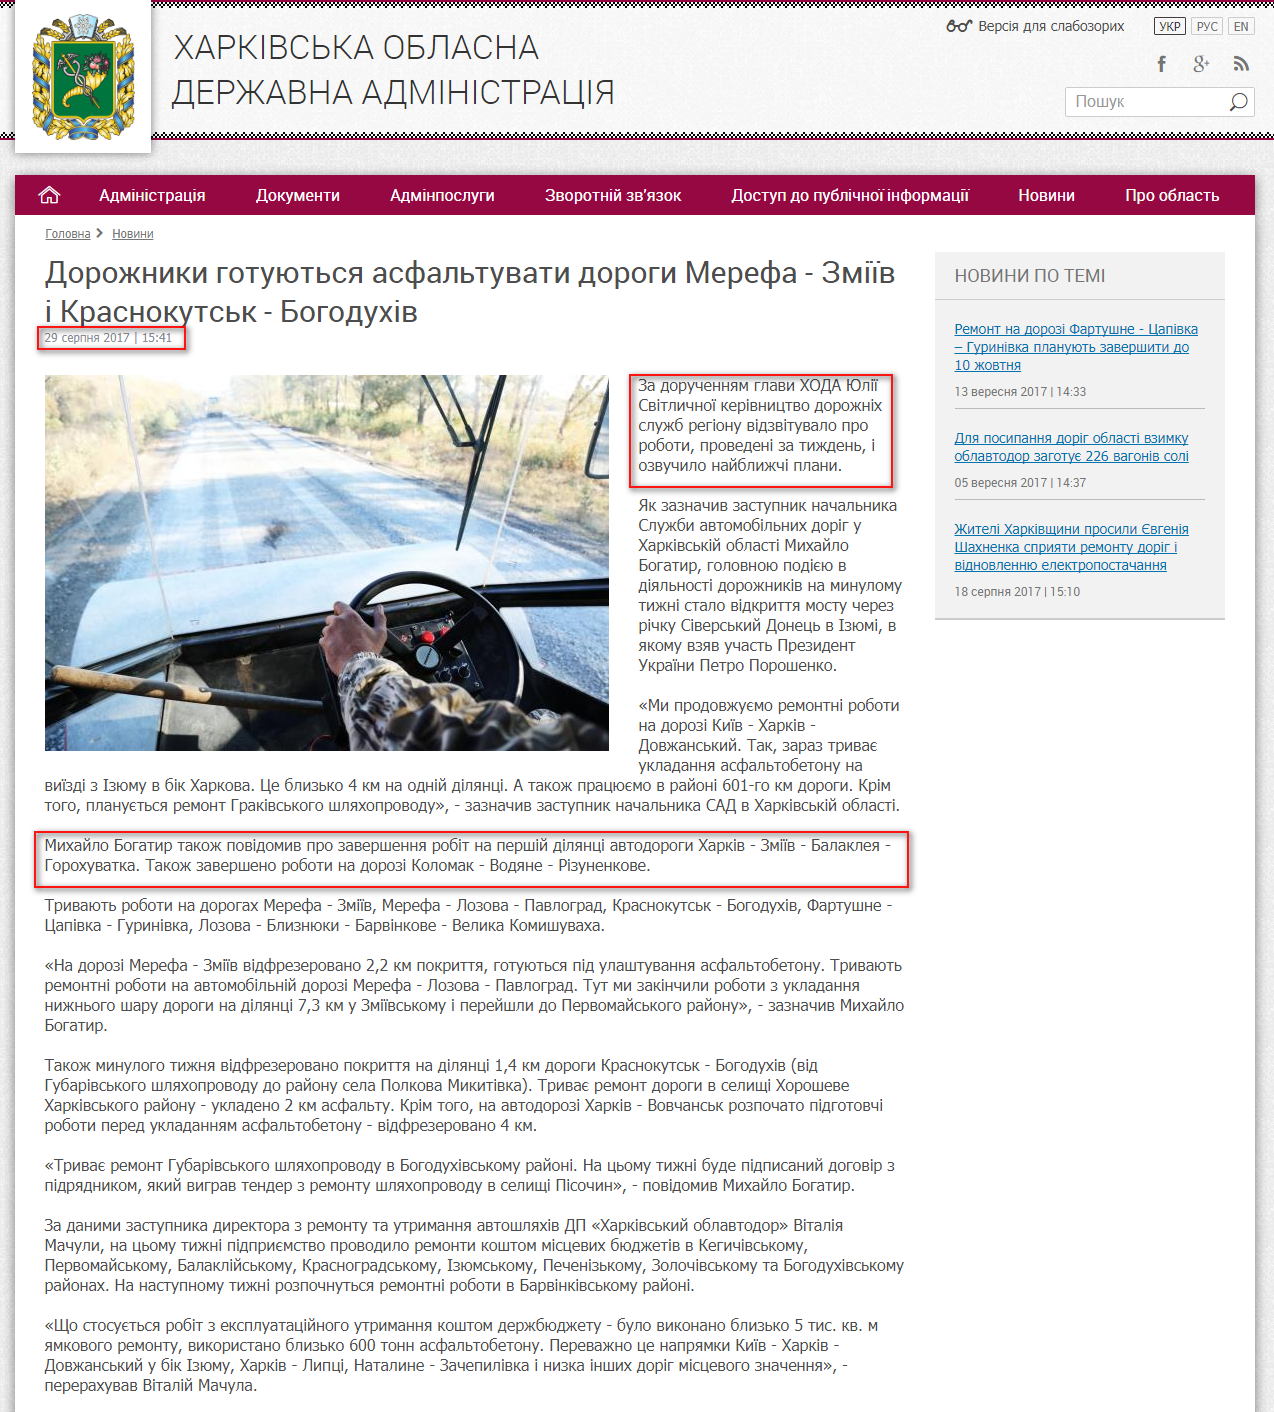 http://kharkivoda.gov.ua/news/88213